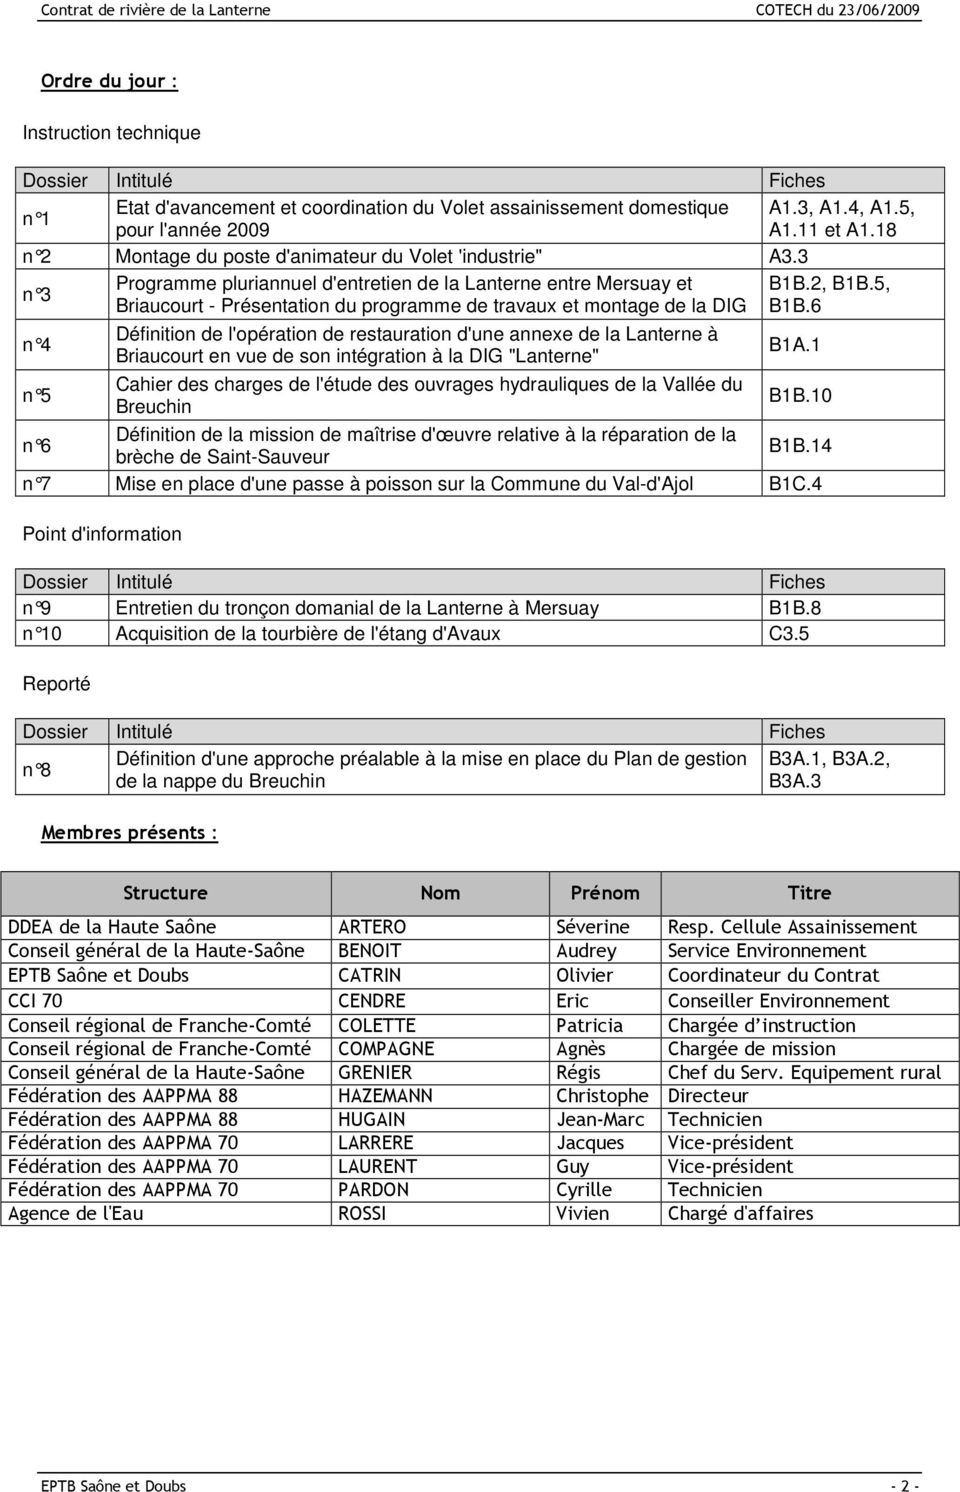 5, n 3 Briaucourt - Présentation du programme de travaux et montage de la DIG B1B.